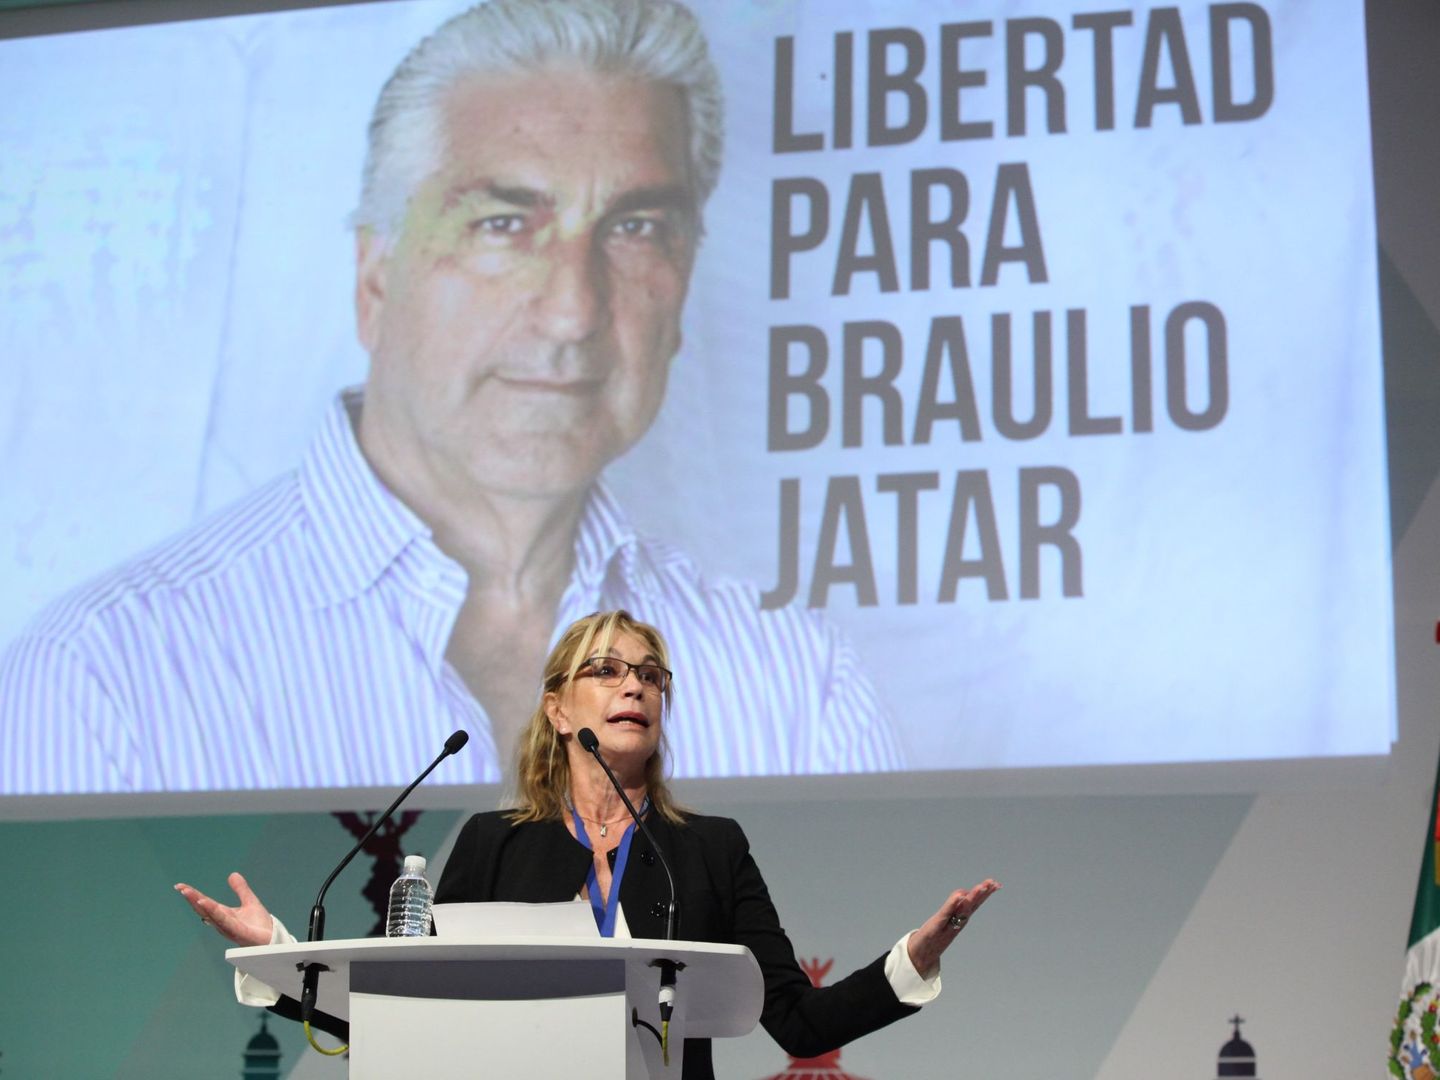 La periodista venezolana Ana Julia Jatar expone en México el caso de su hermano Braulio, detenido hasta ahora (EFE)